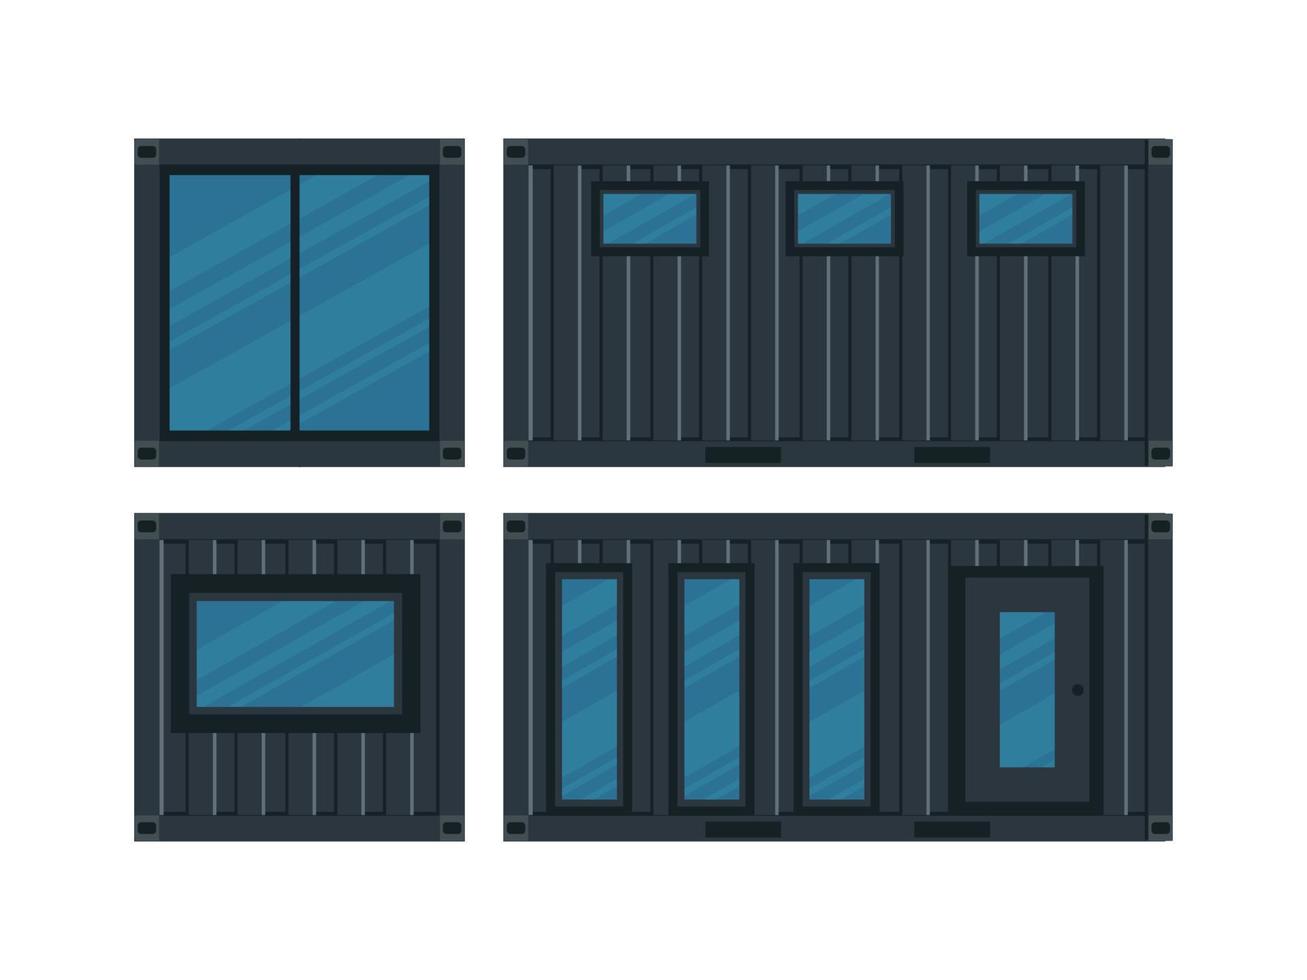 hus, café av svart lastcontainer. envåningsbyggnad med en veranda ur container för fartyg isolerad på en vit bakgrund. vektor illustration.